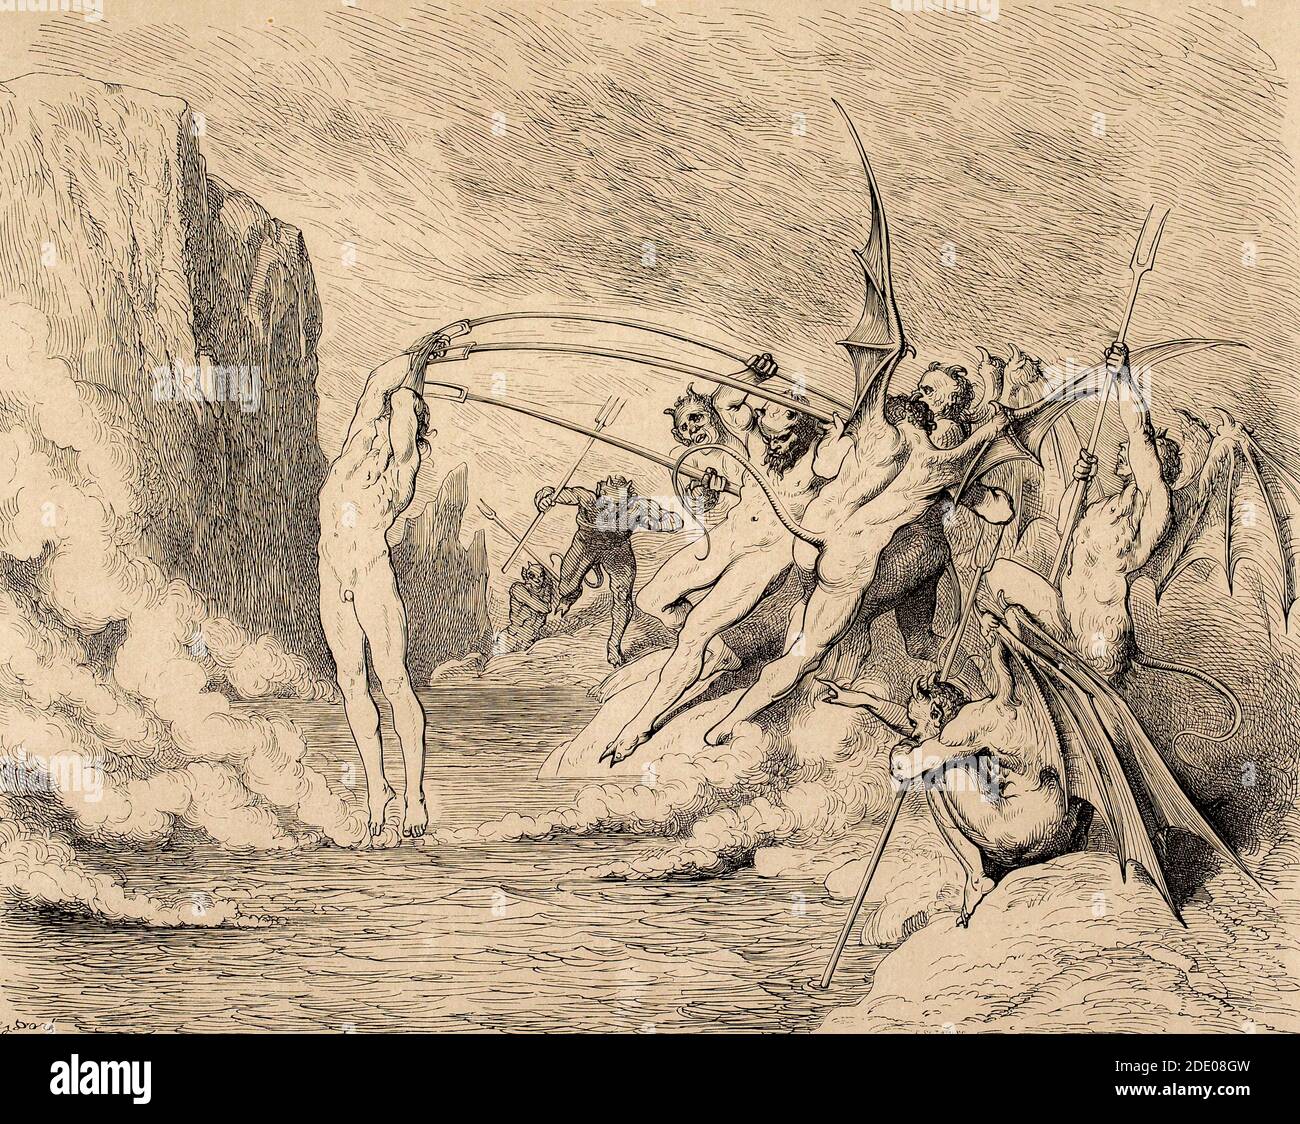 Dante Divina Commedia - Inferno - XXI canto - la Malebranche - VIII cerchio - illustrazione di Gustave Dorè Foto Stock